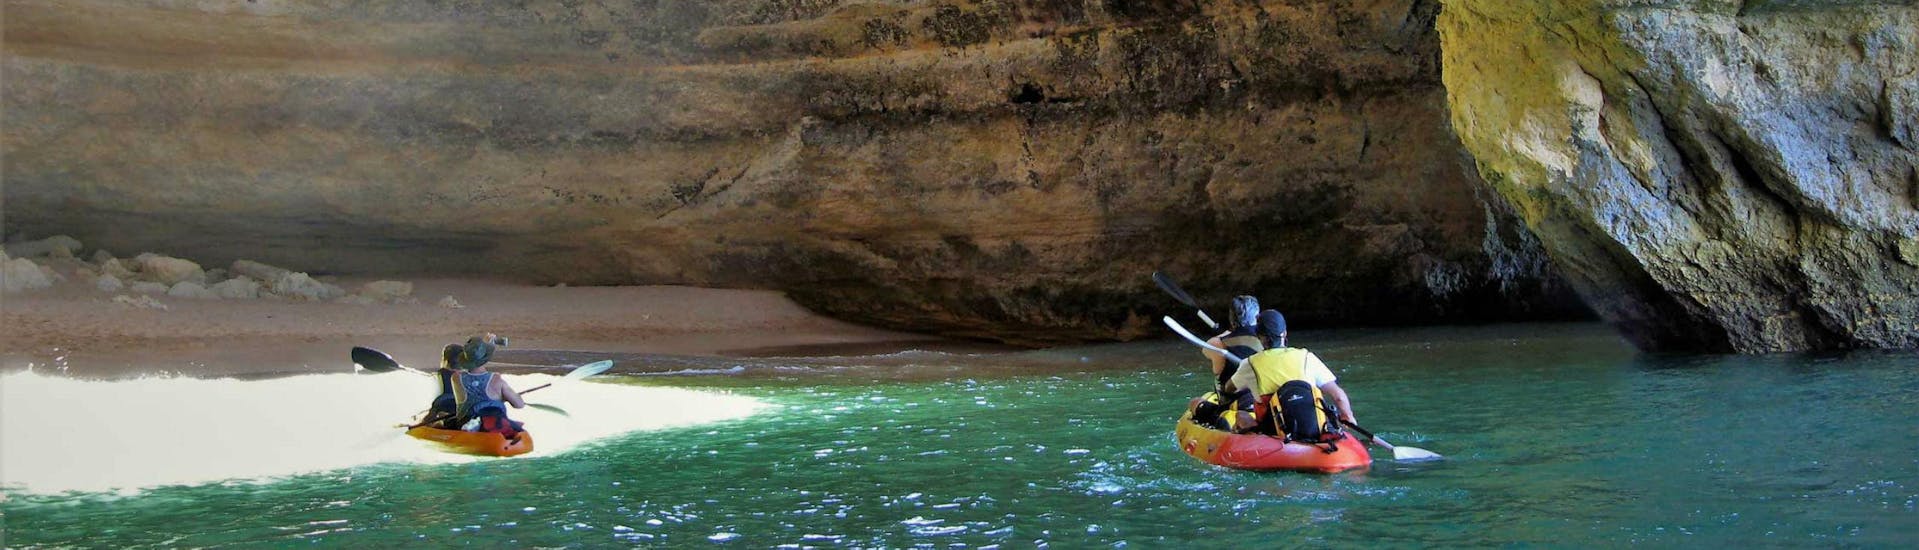 Un gruppo di kayakers sta pagaiando nella grotta di Benagil durante l'escursione in barca e kayak - grotta di Benagil con le escursioni di Seasiren Tours.